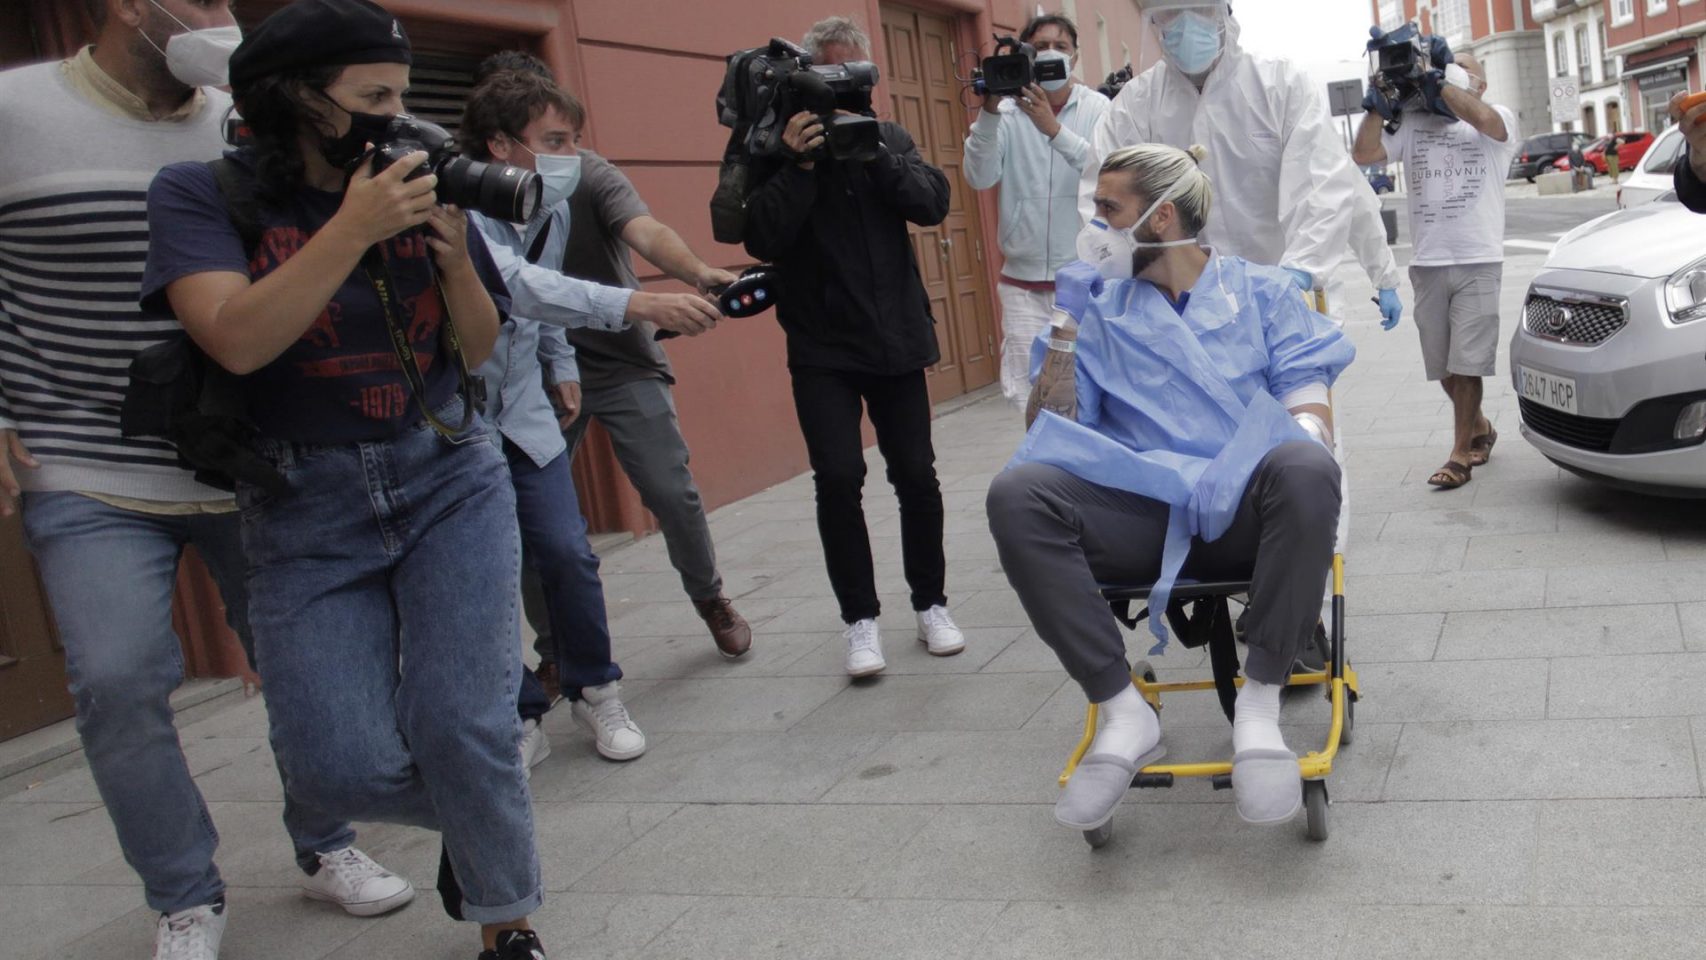 El jugador del Fuenlabrada llega en silla de ruedas el hotel de A Coruña 